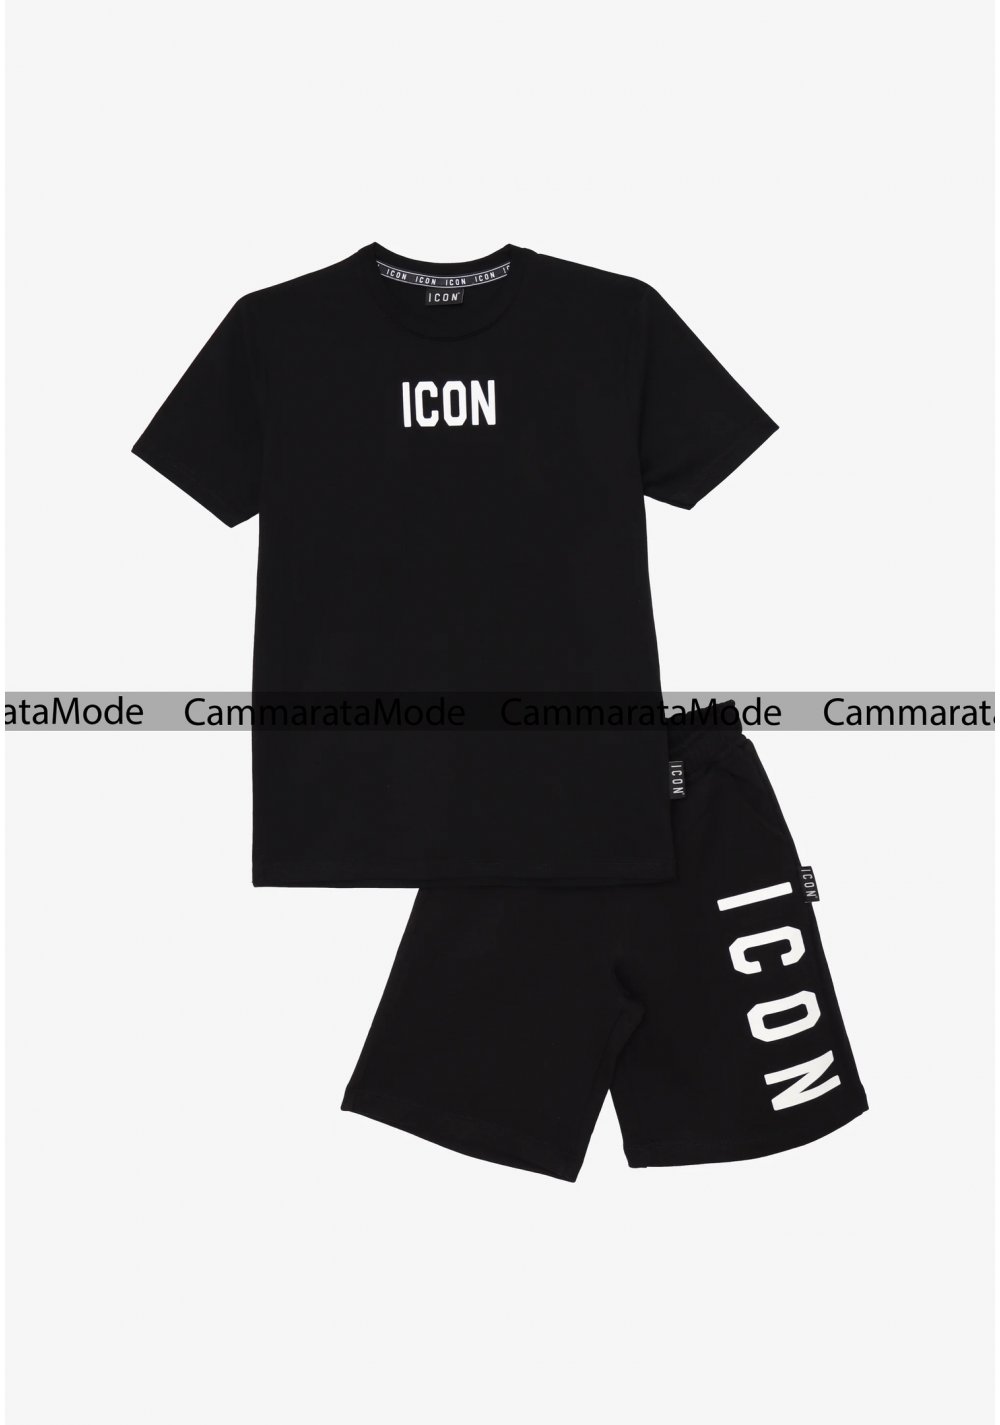 Completo ICON bambini - Set nero t-shirt e bermuda con logo in gomma